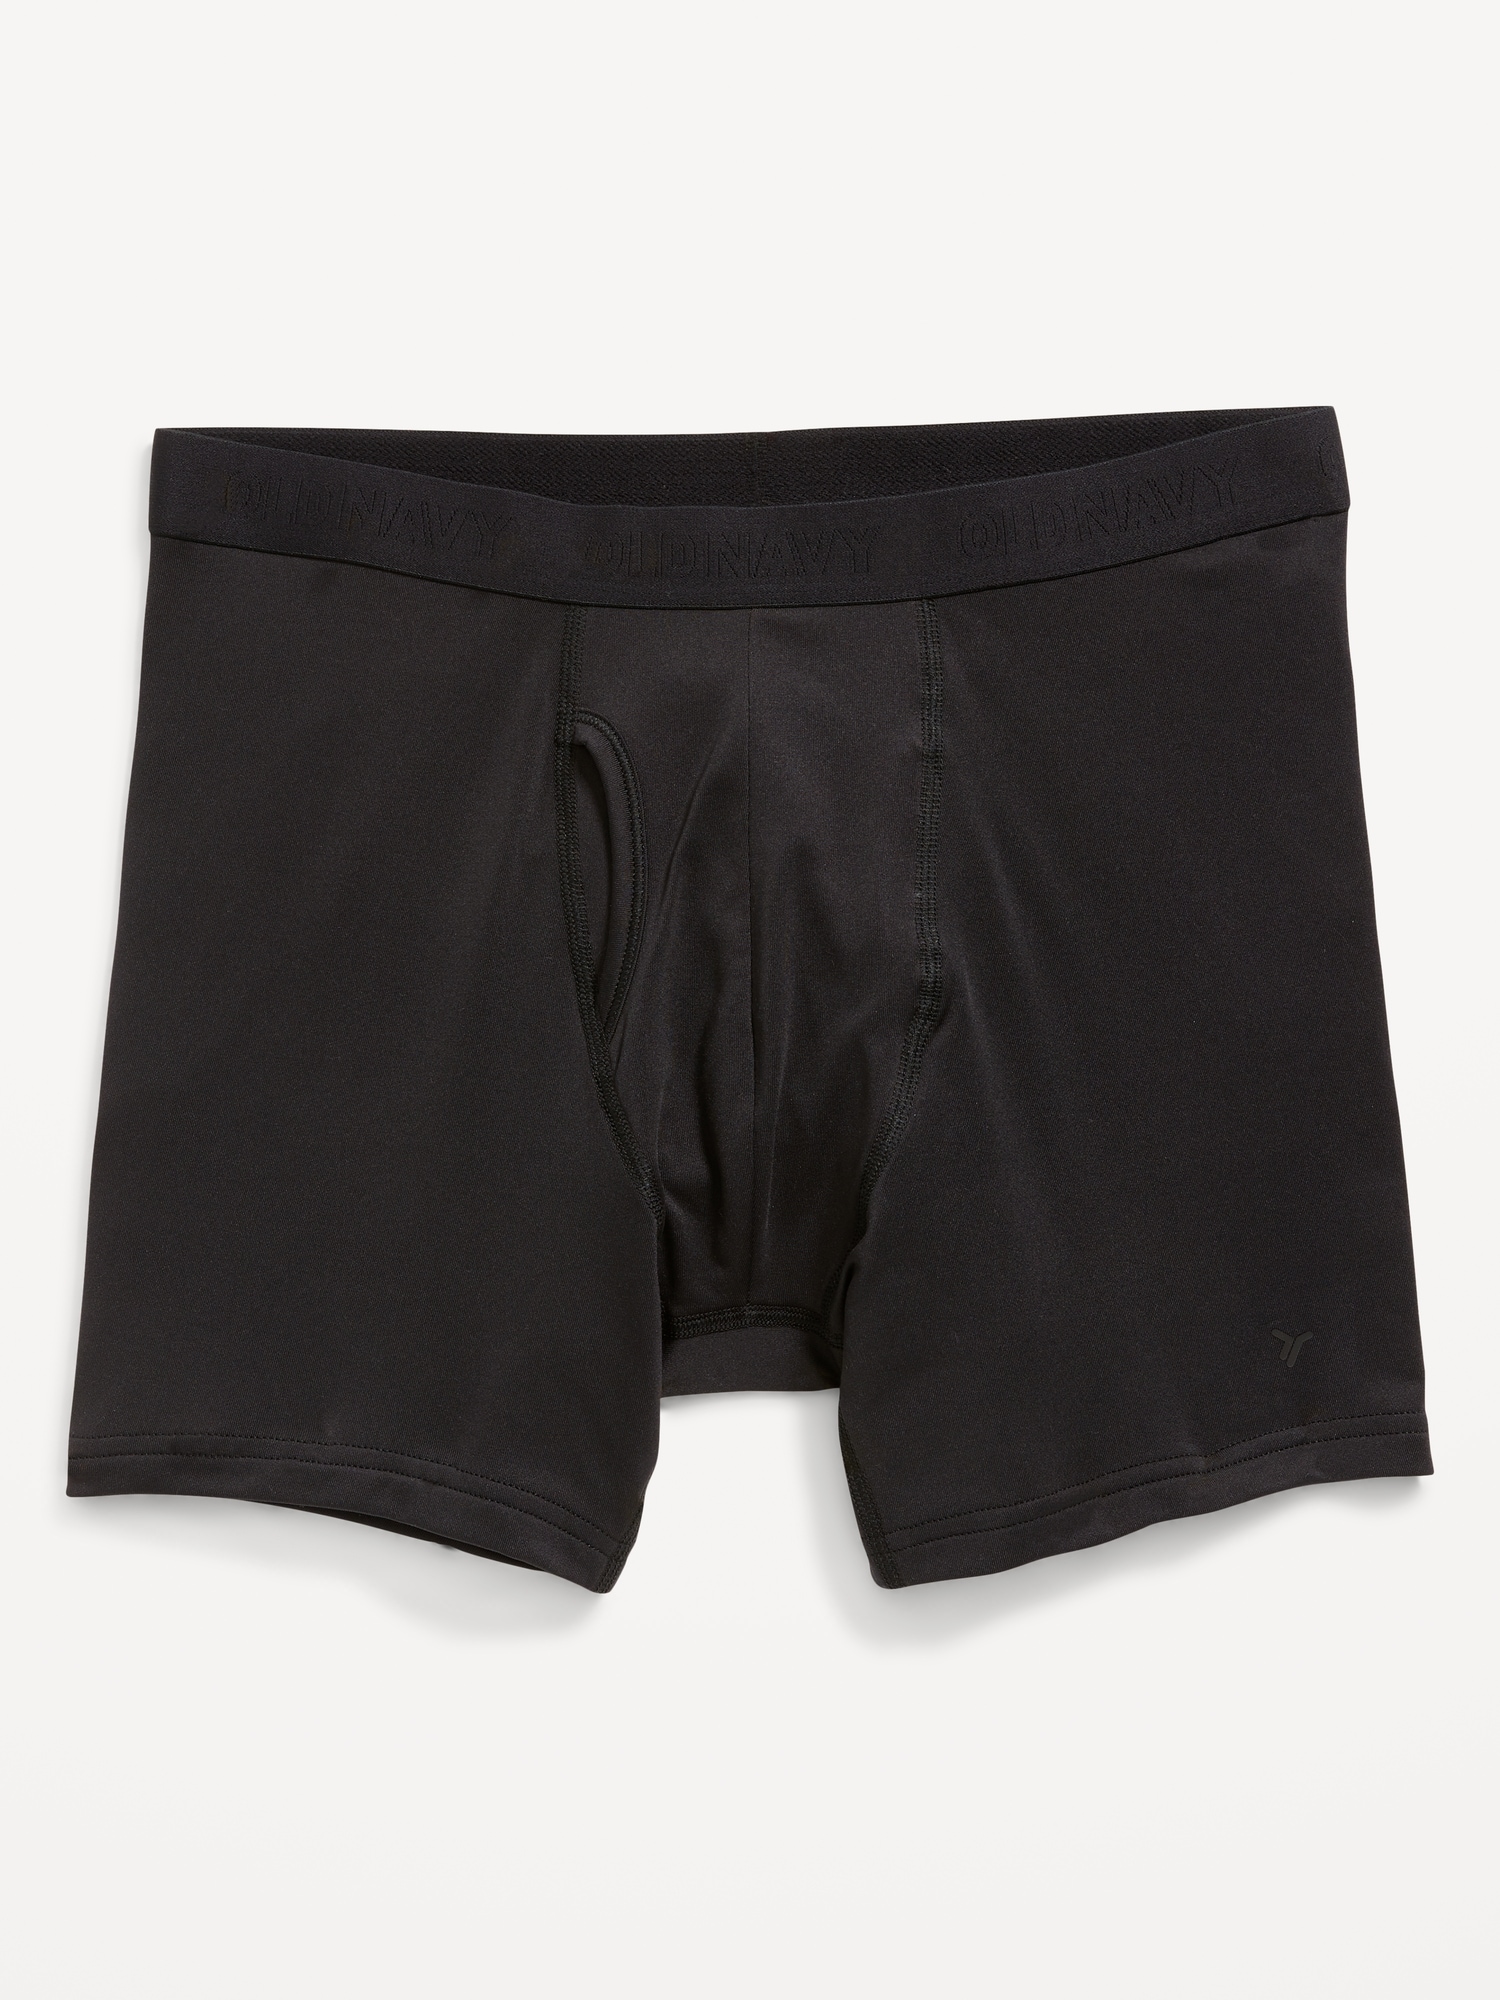 Old Navy Go-Dry Cool Performance Boxer-Brief Underwear -- 5-inch inseam black. 1